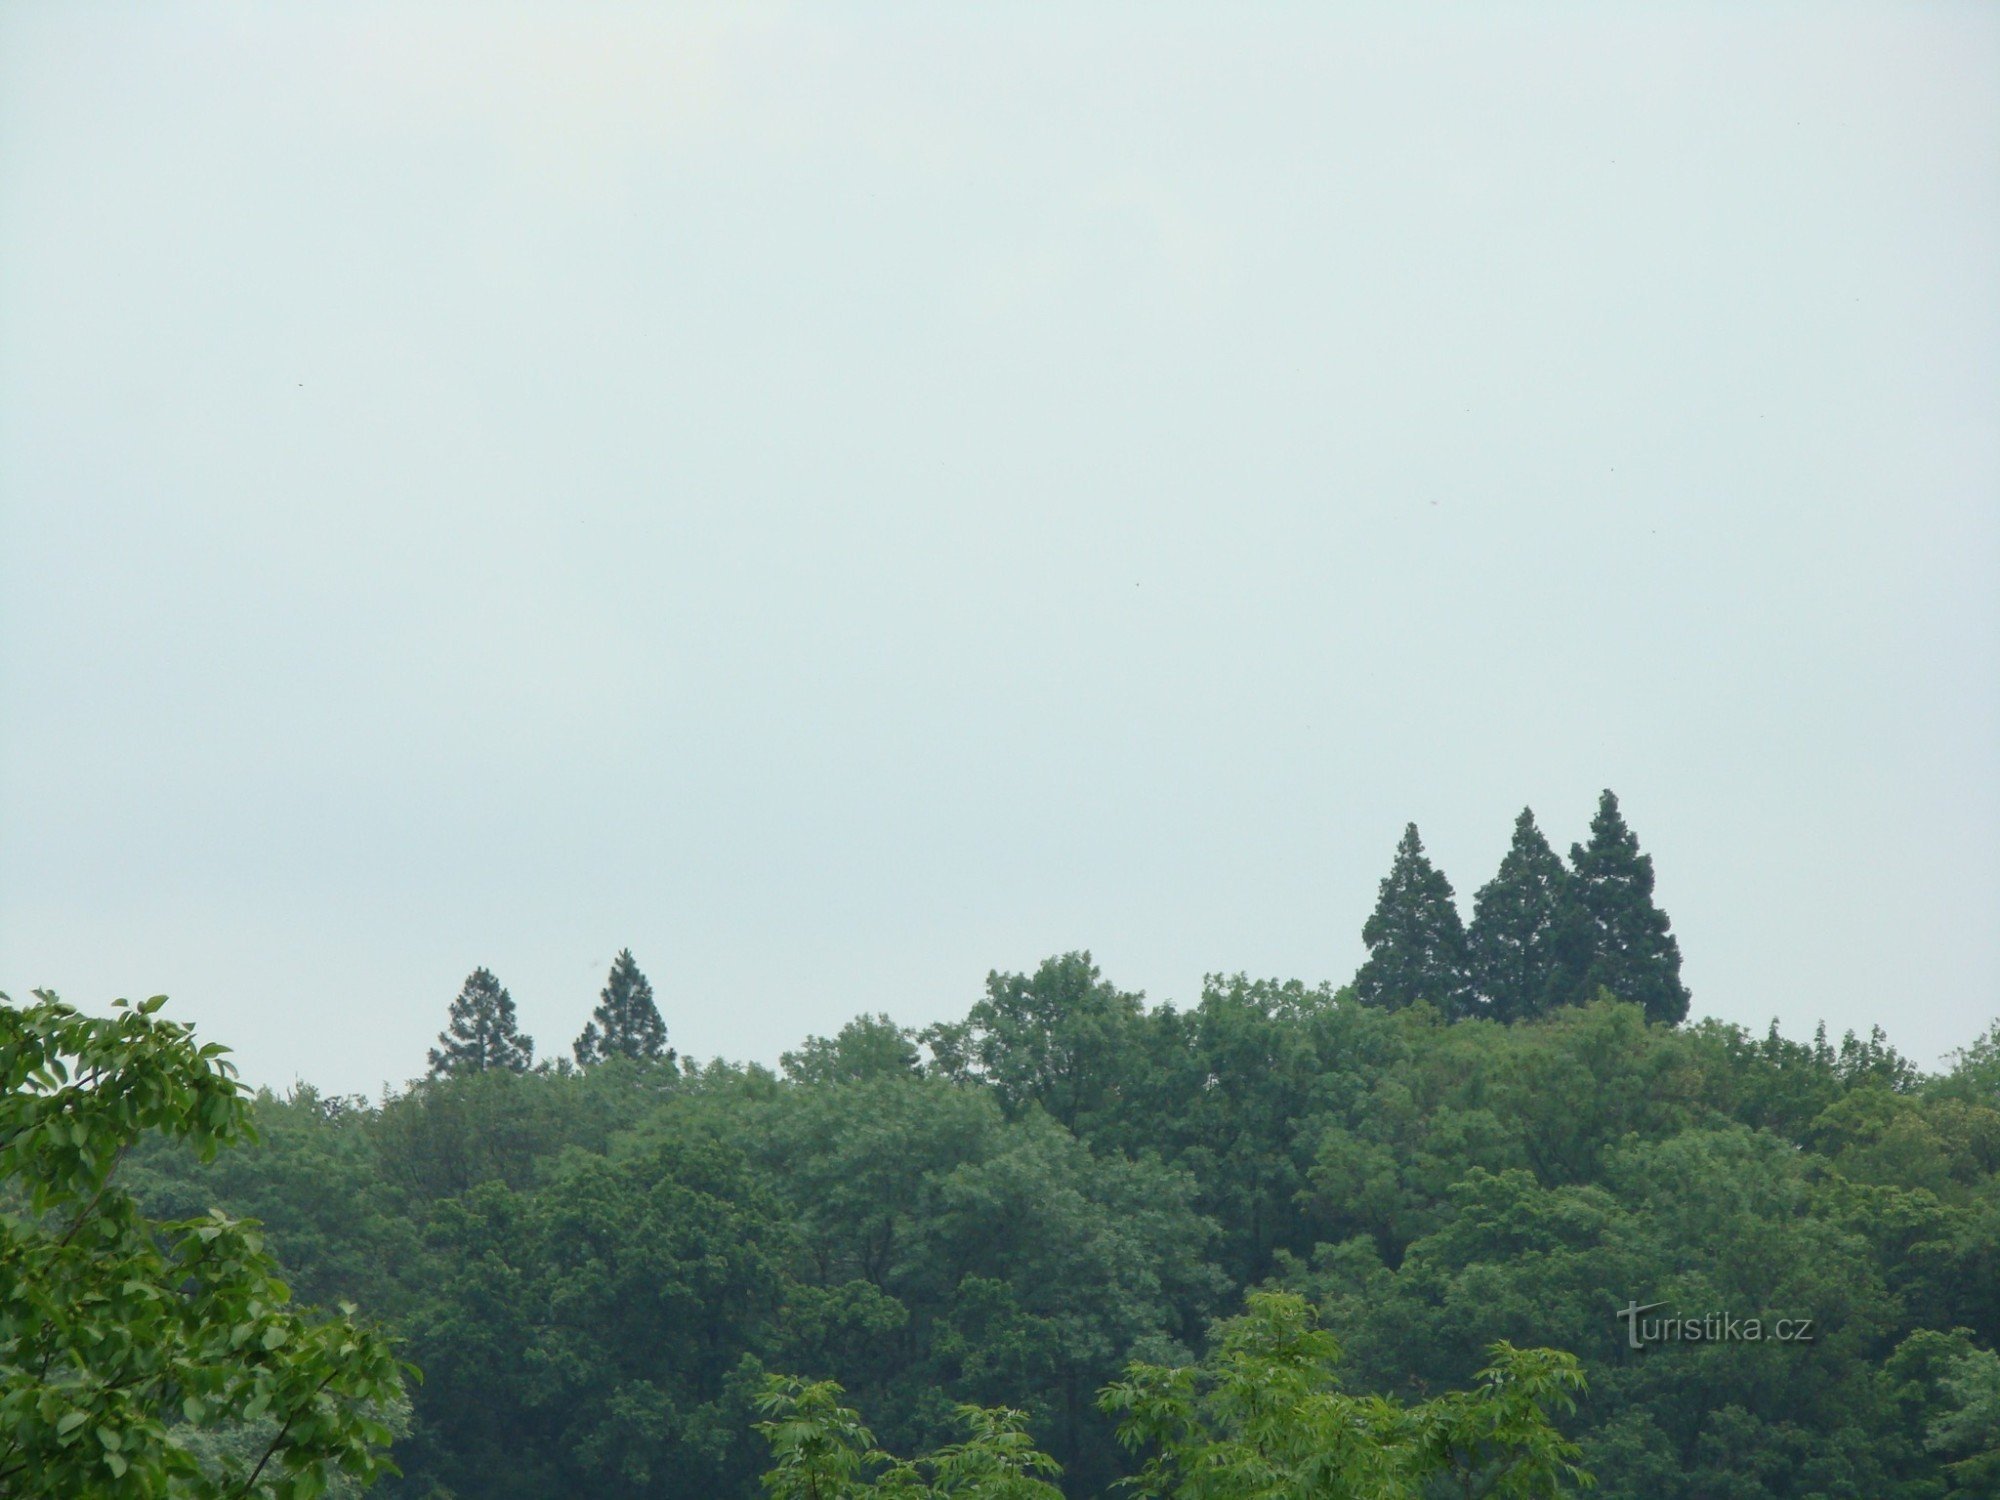 Sequoie giganti a Ratměřice. Sono molto più alti degli altri alberi del parco del castello.